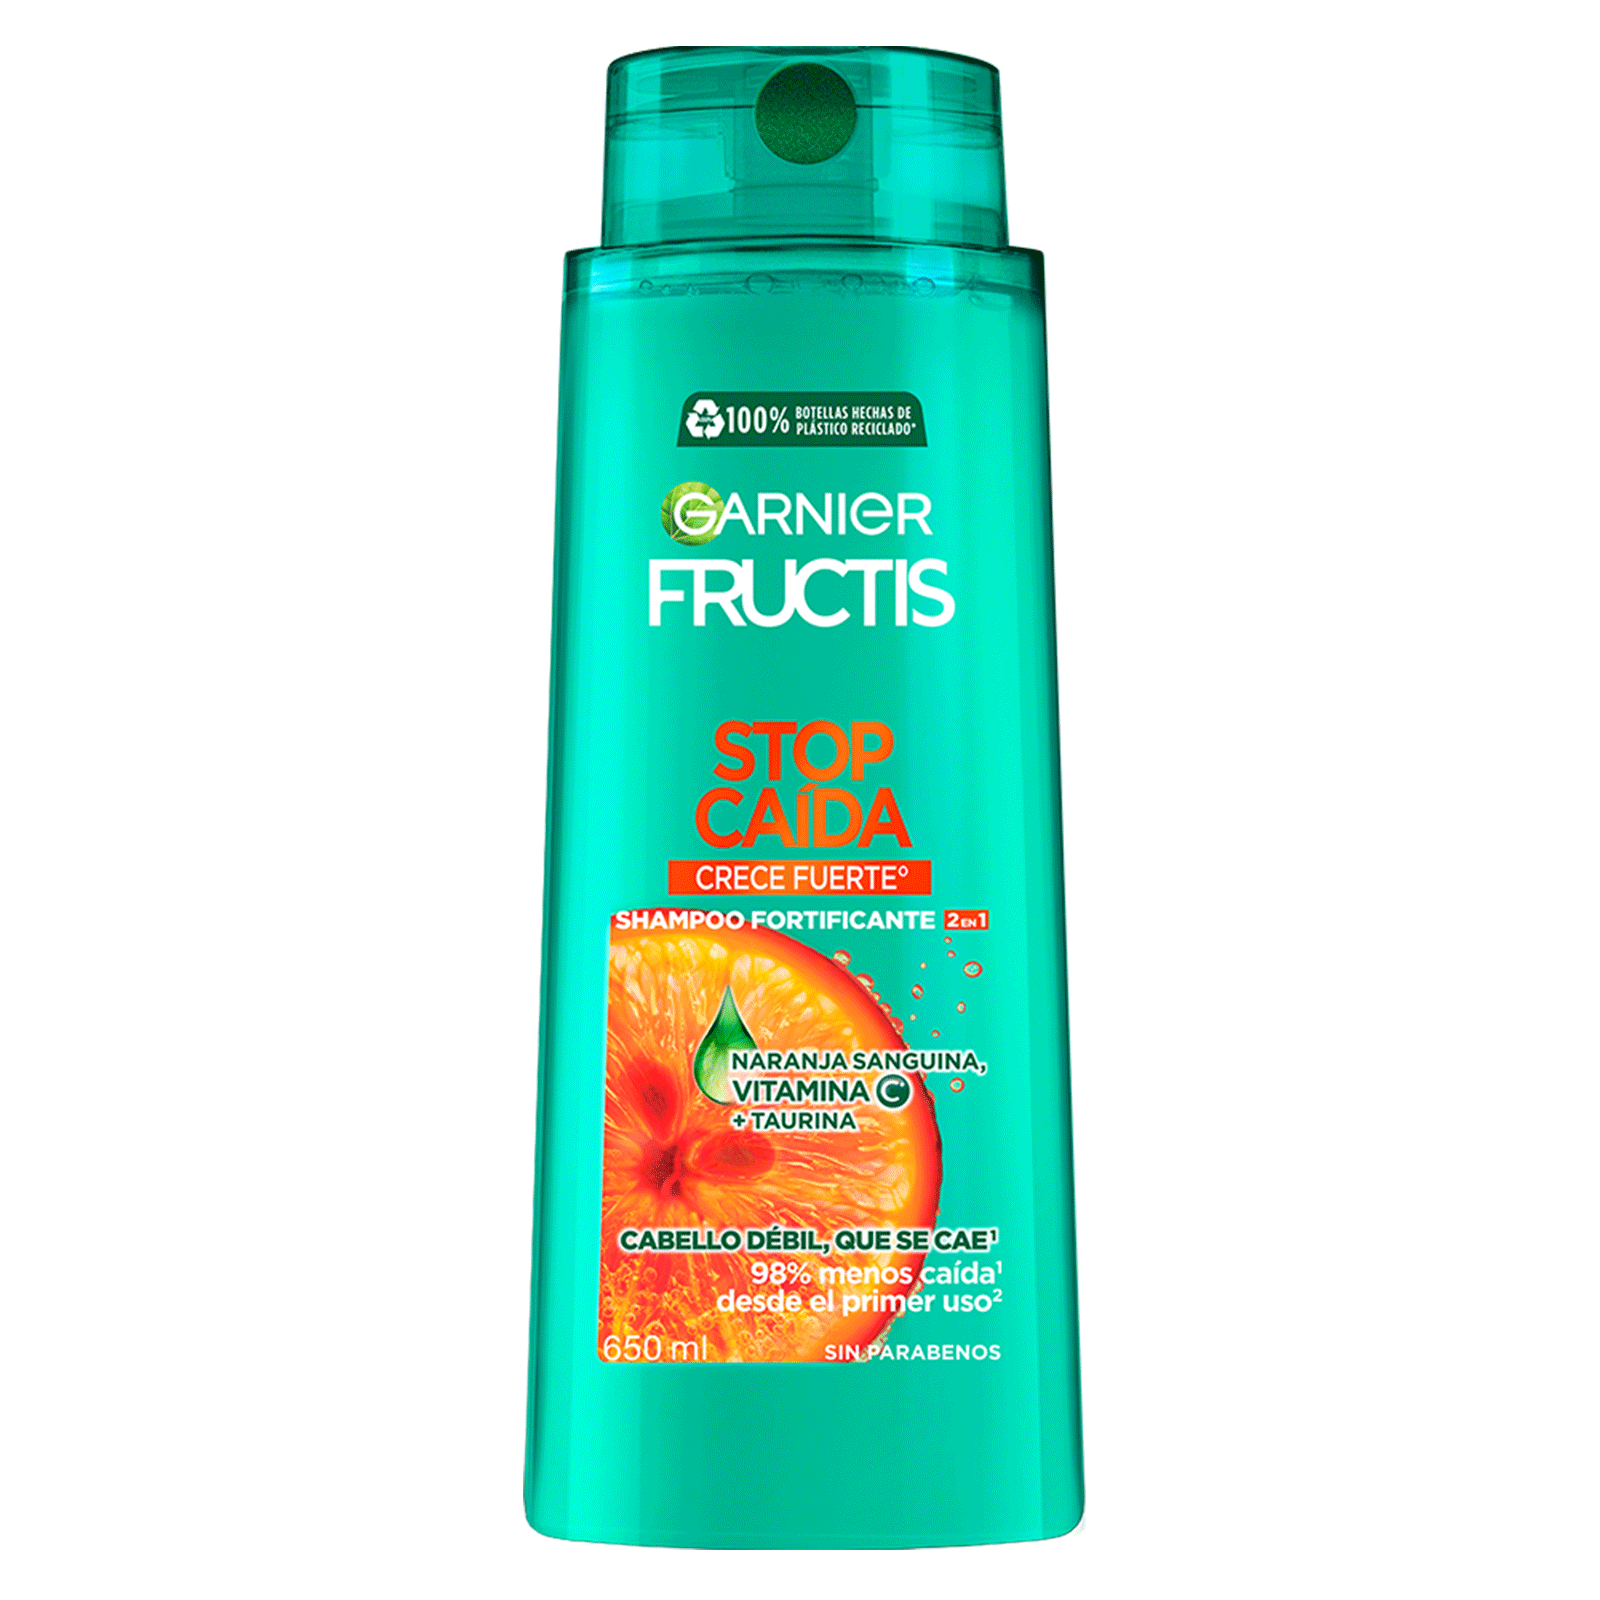 Shampoo Garnier Fructis Stop Caída Crece Fuerte con vitamina C° que reduce la caída del pelo con formula vegana para cabello debil